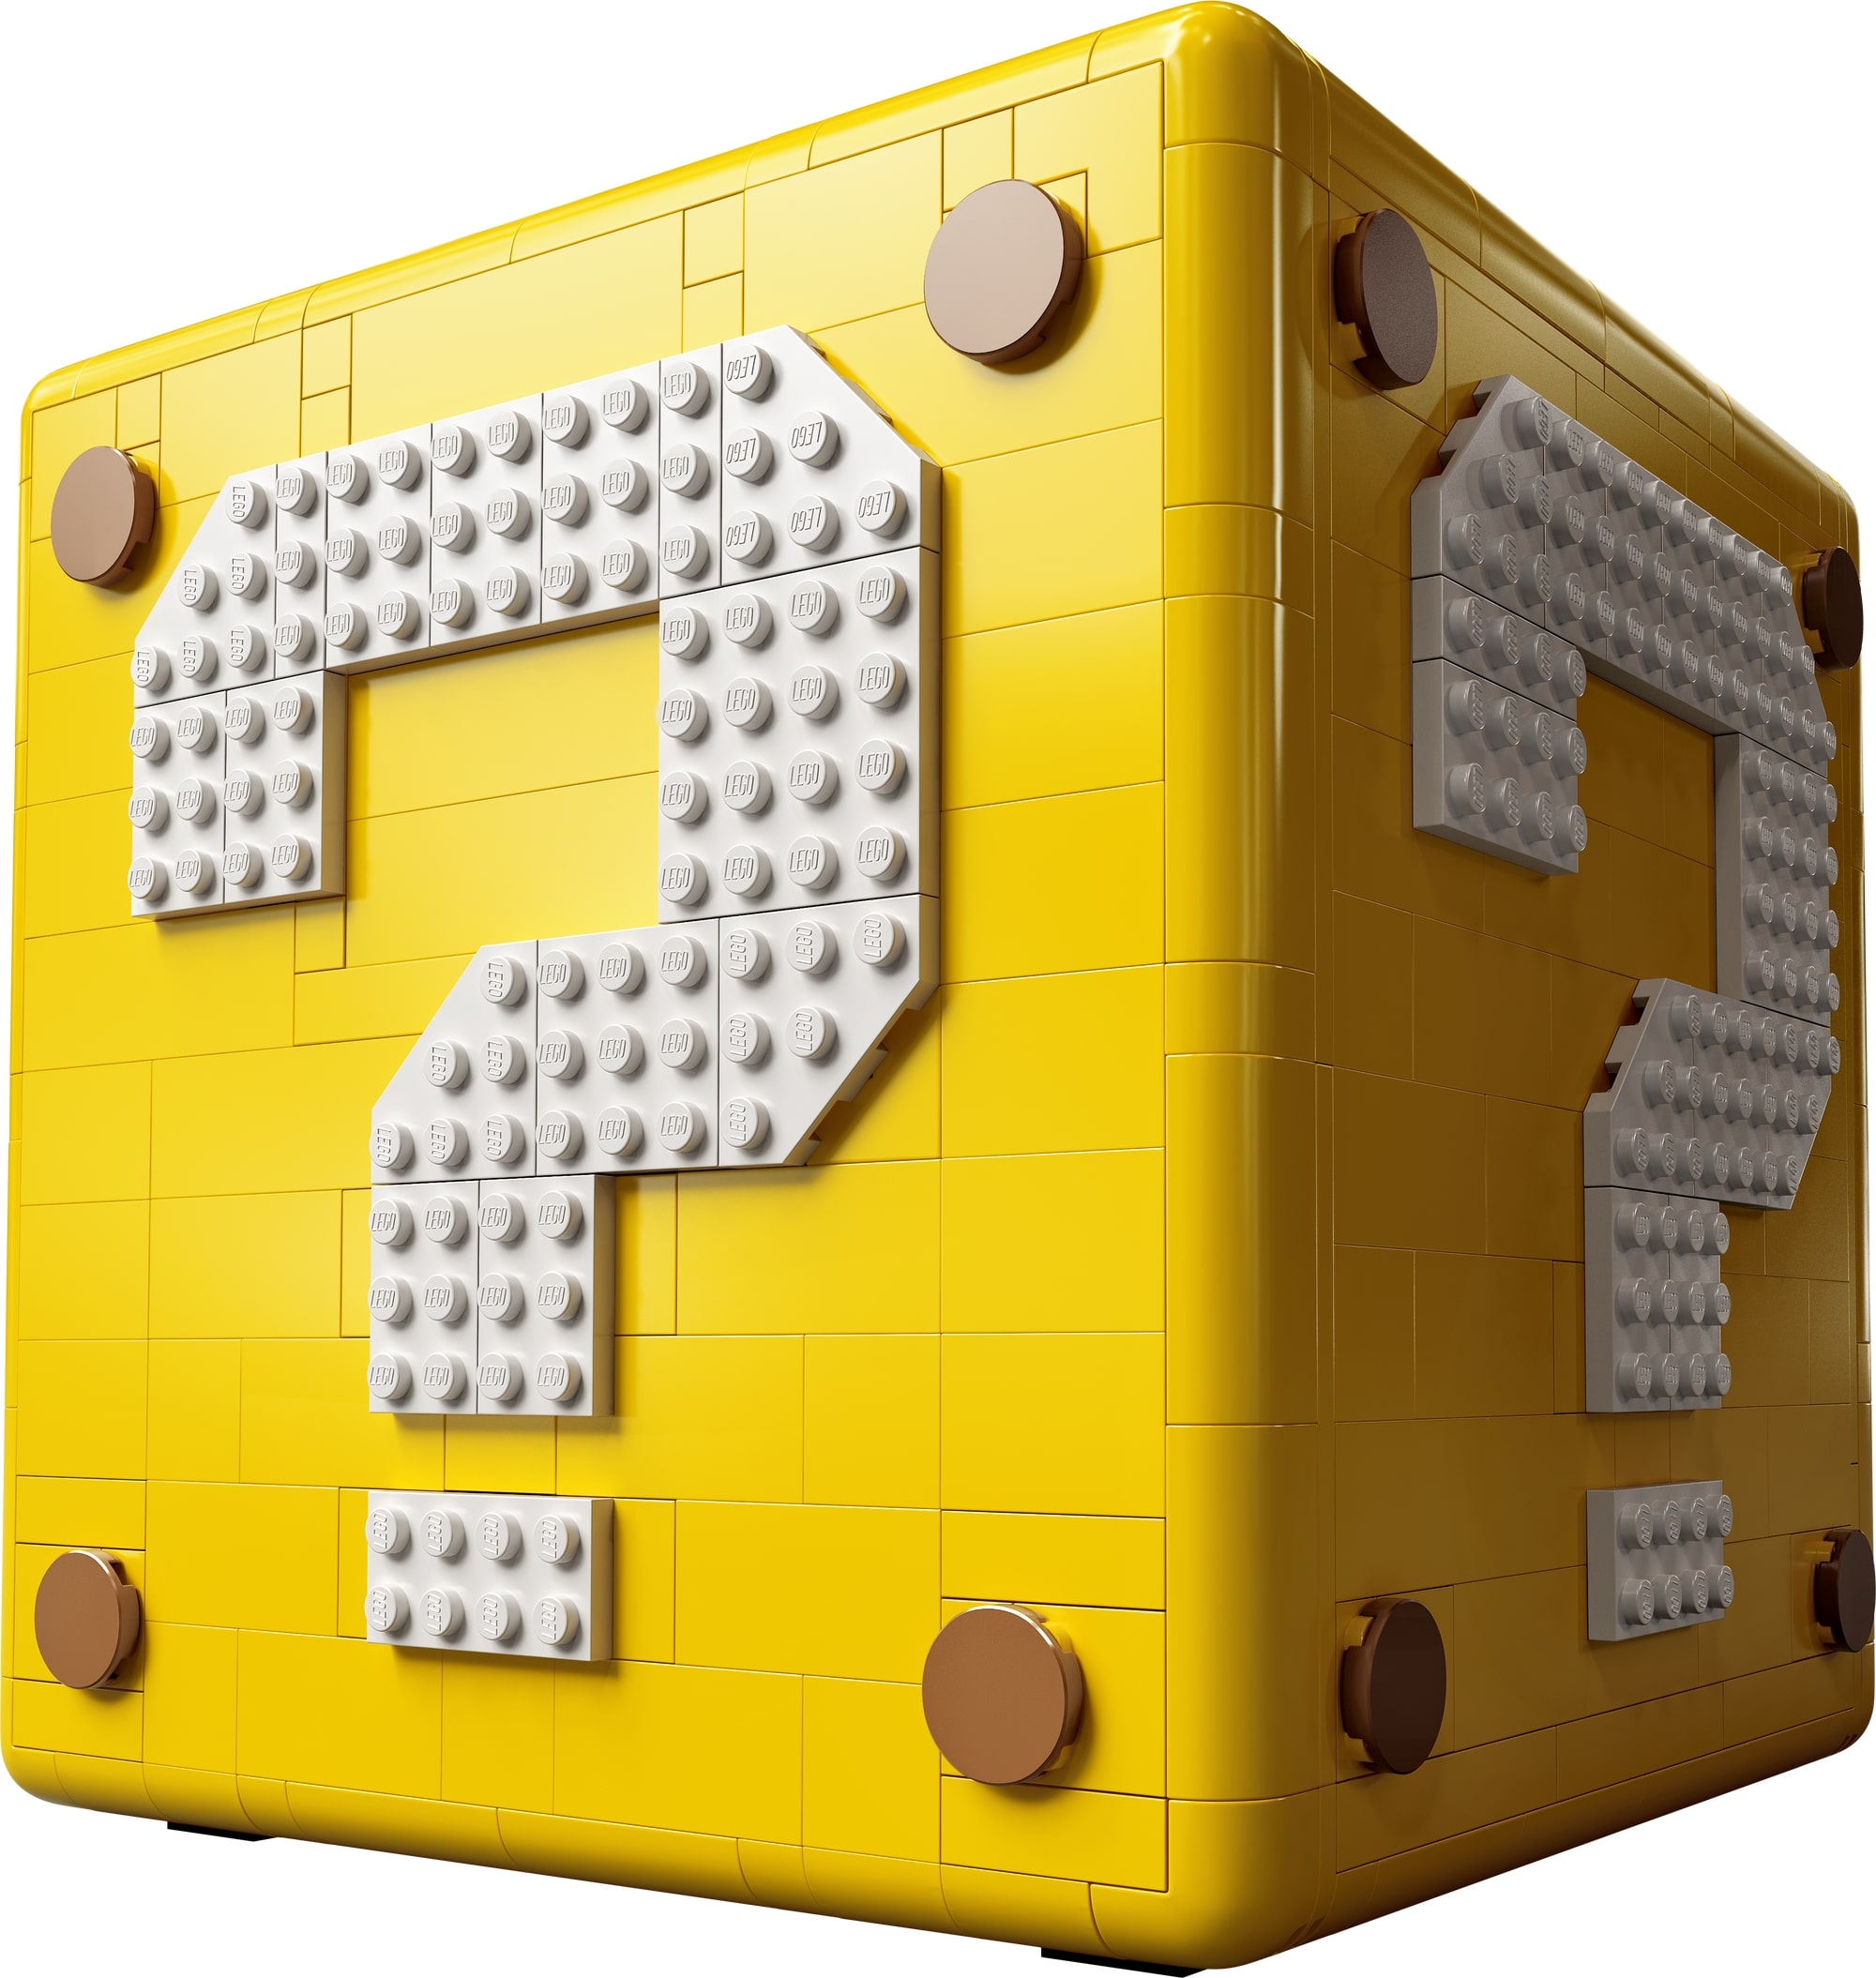 10月1日発売レゴスーパーマリオ スーパーマリオ64 ハテナブロック 新製品情報 21 スタッズ レゴの楽しさを伝えるwebメディア